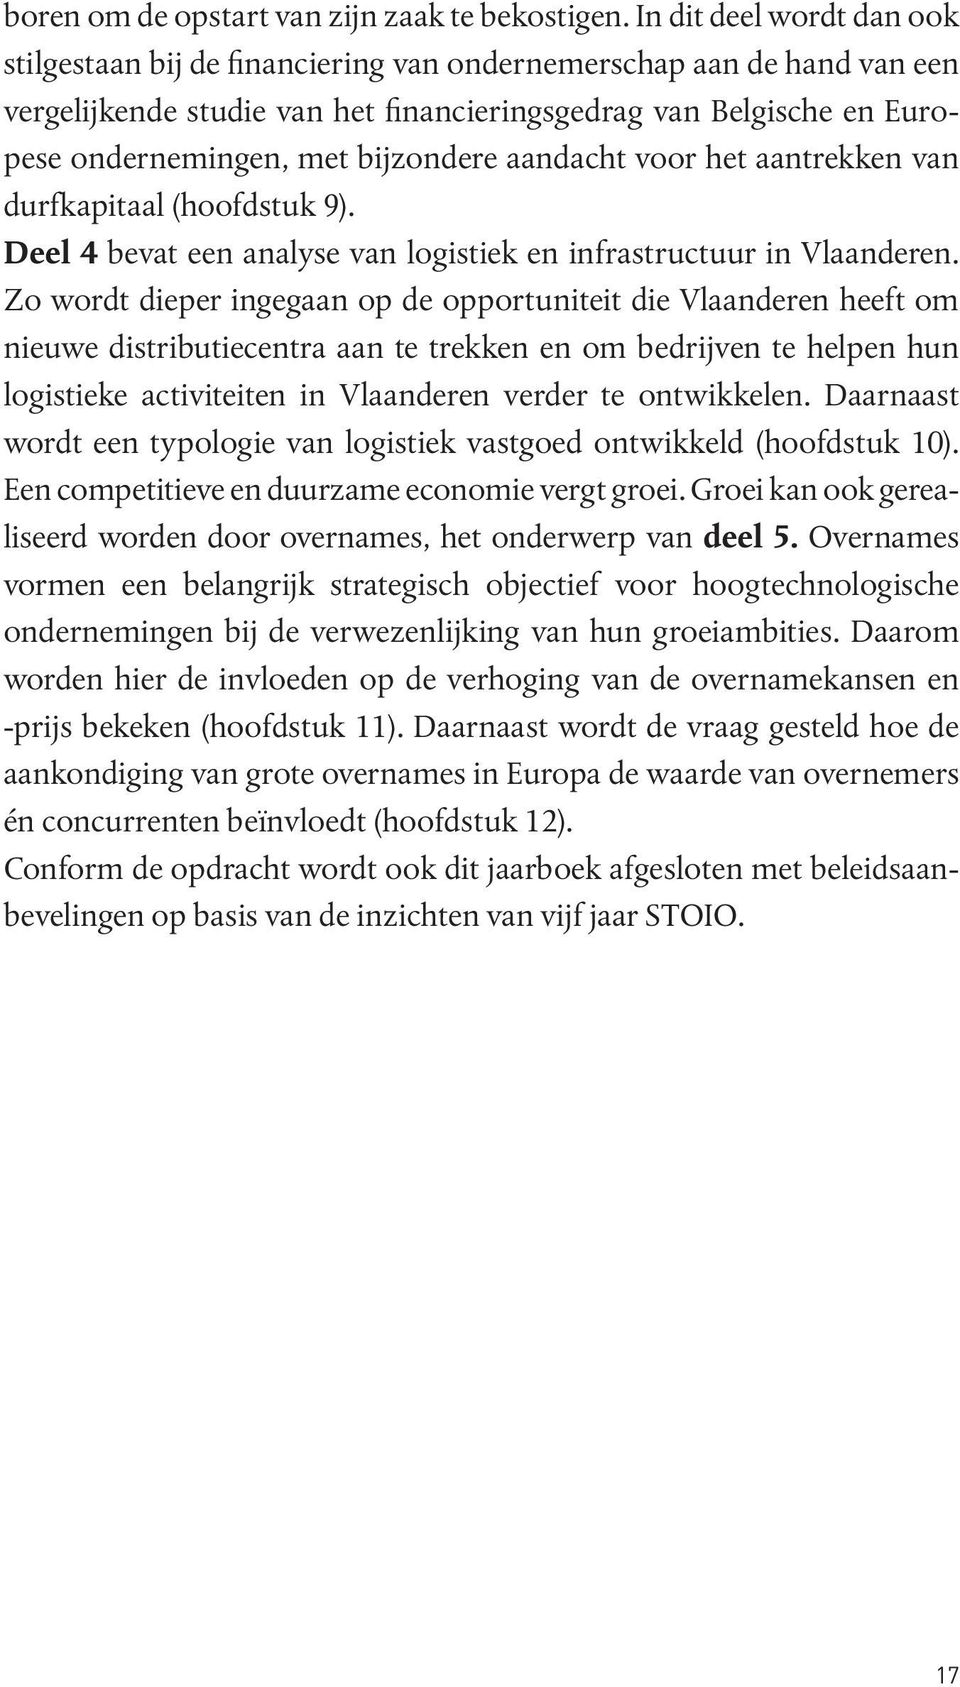 bijzondere aandacht voor het aantrekken van durfkapitaal (hoofdstuk 9). Deel 4 bevat een analyse van logistiek en infrastructuur in Vlaanderen.